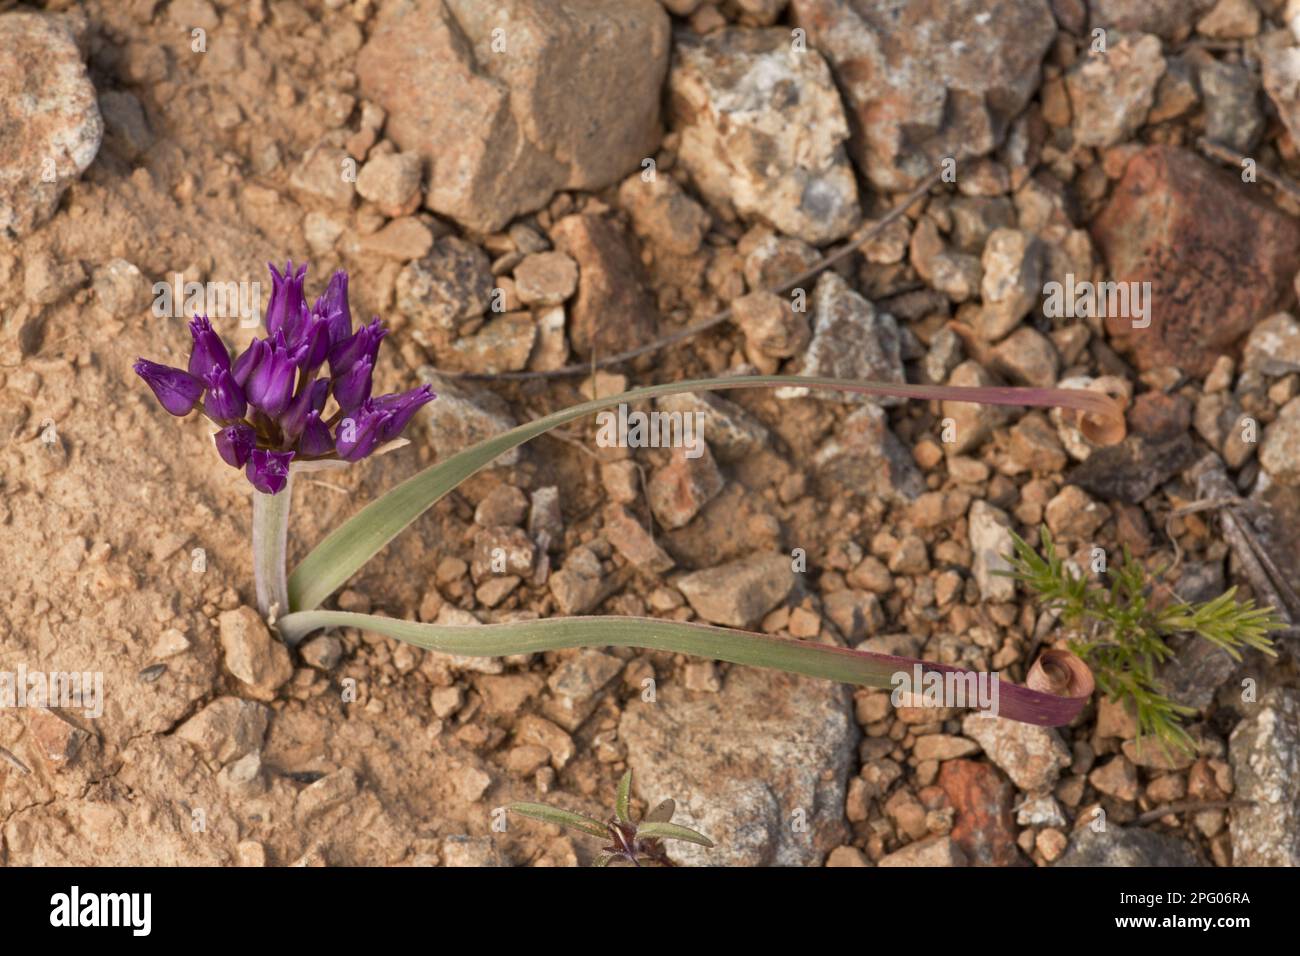 Scytheleaf Onion (Allium falcifolium) flowering, Mount Eddy, Klamath Mountains, California, USA Stock Photo